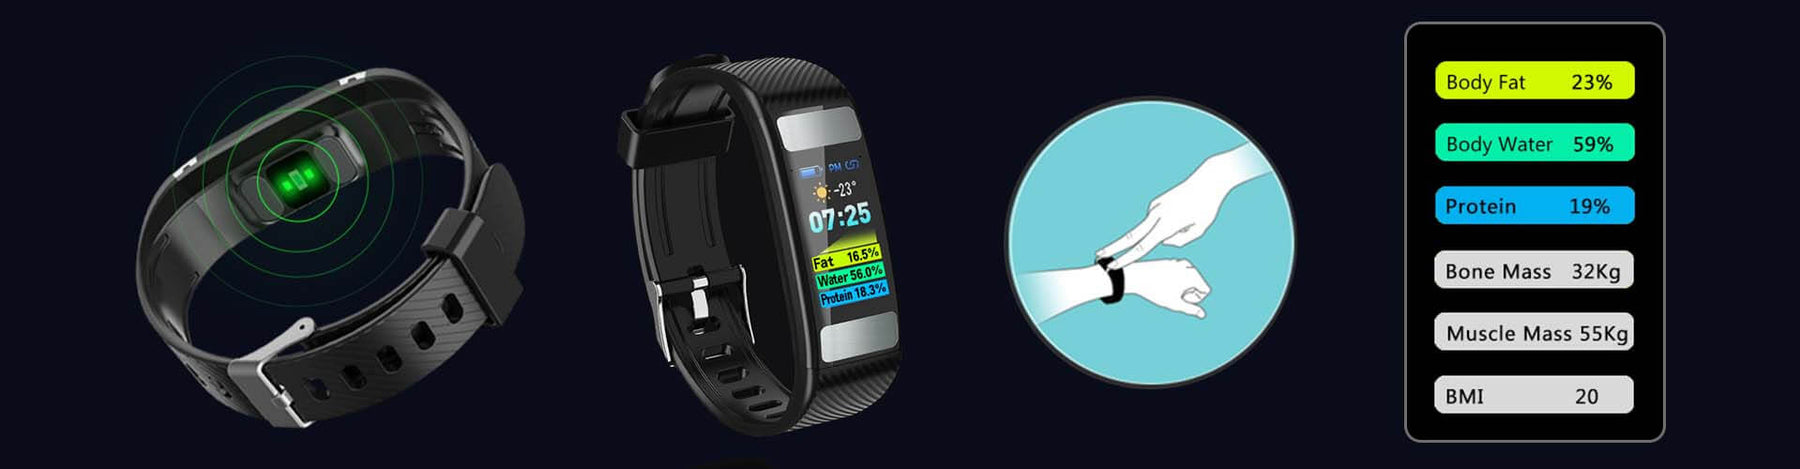 Body Fat Wristband Muscle Mass BMI Test Fitness Tracker Smart Band | video